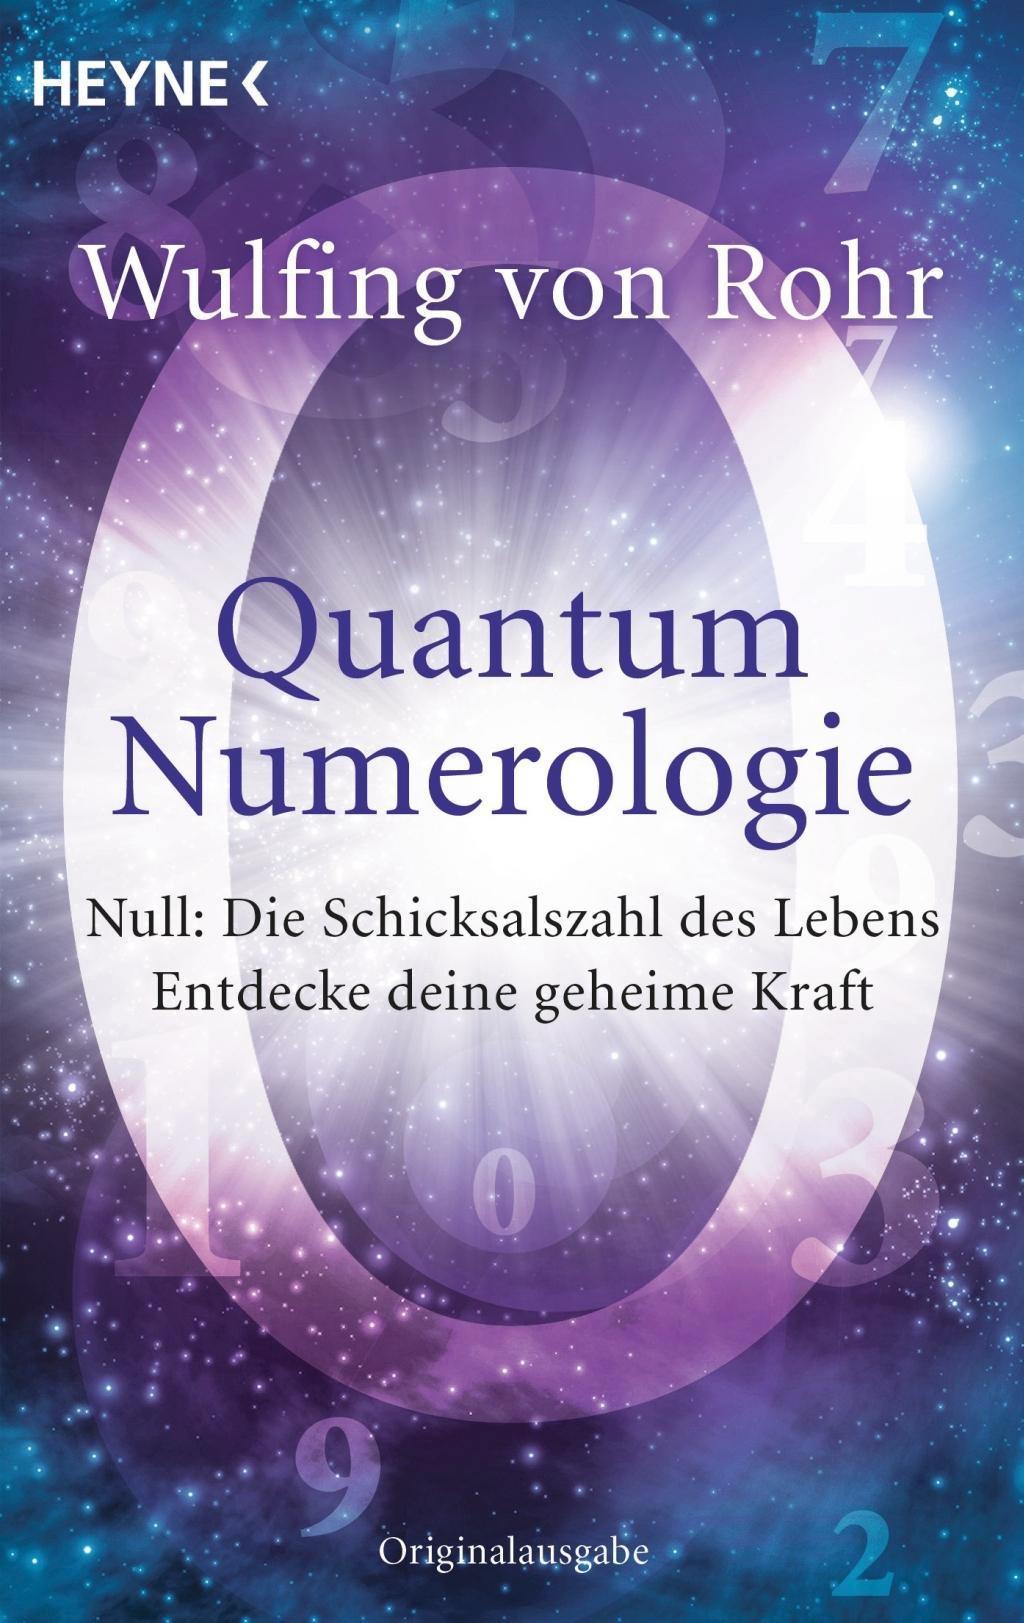 Quantum Numerologie